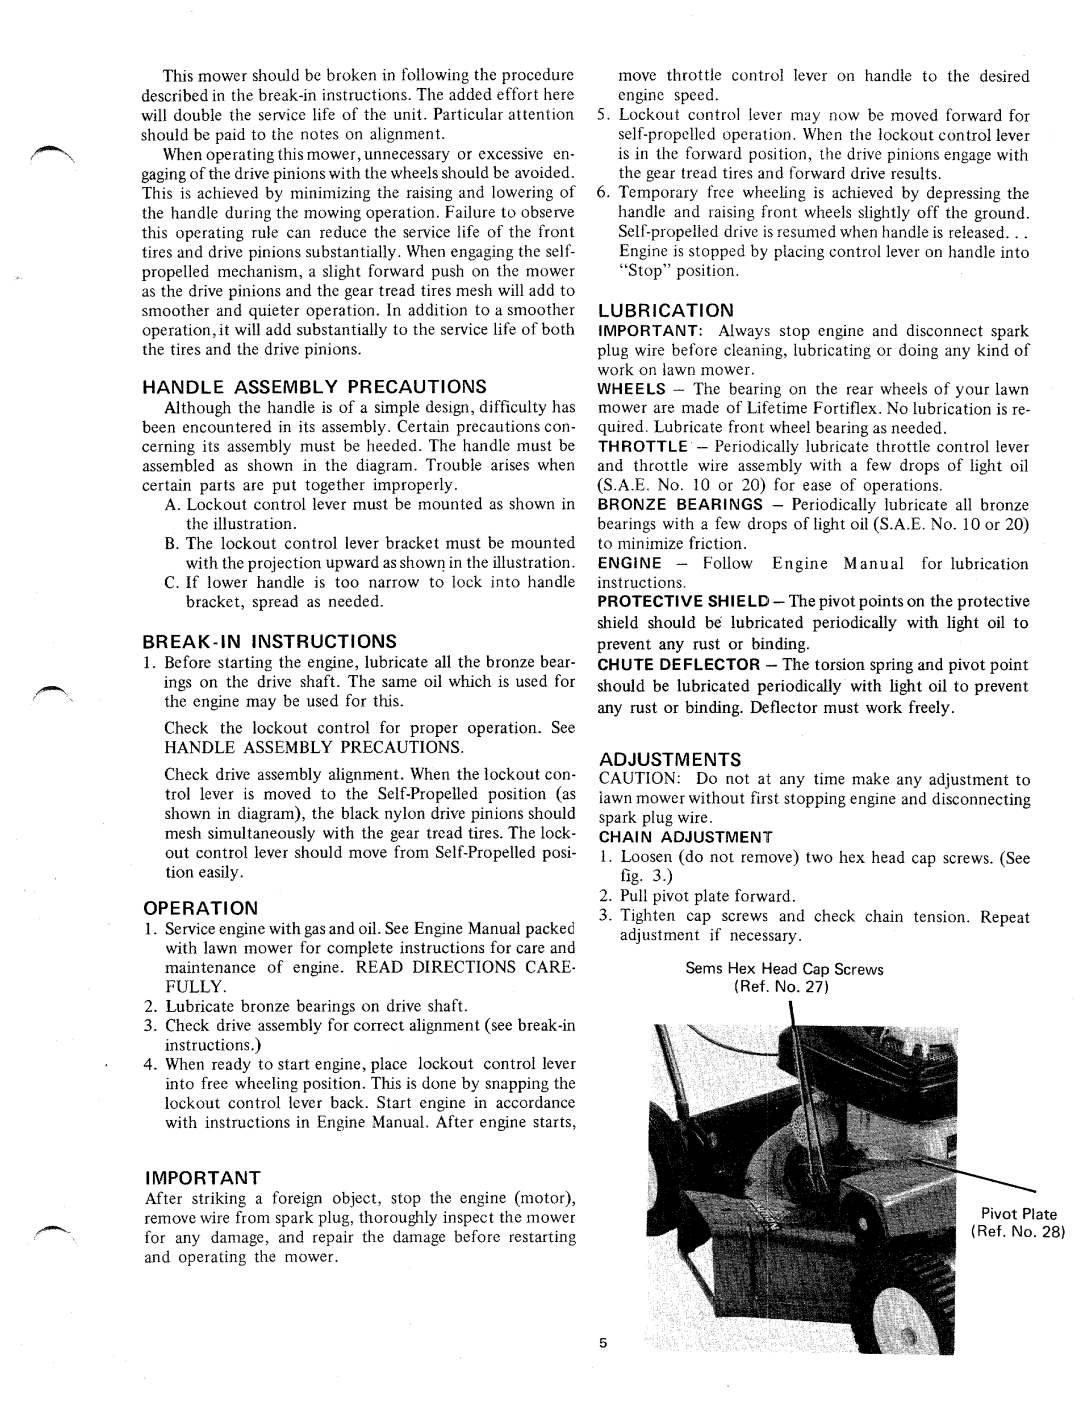 MTD 122-250 manual 